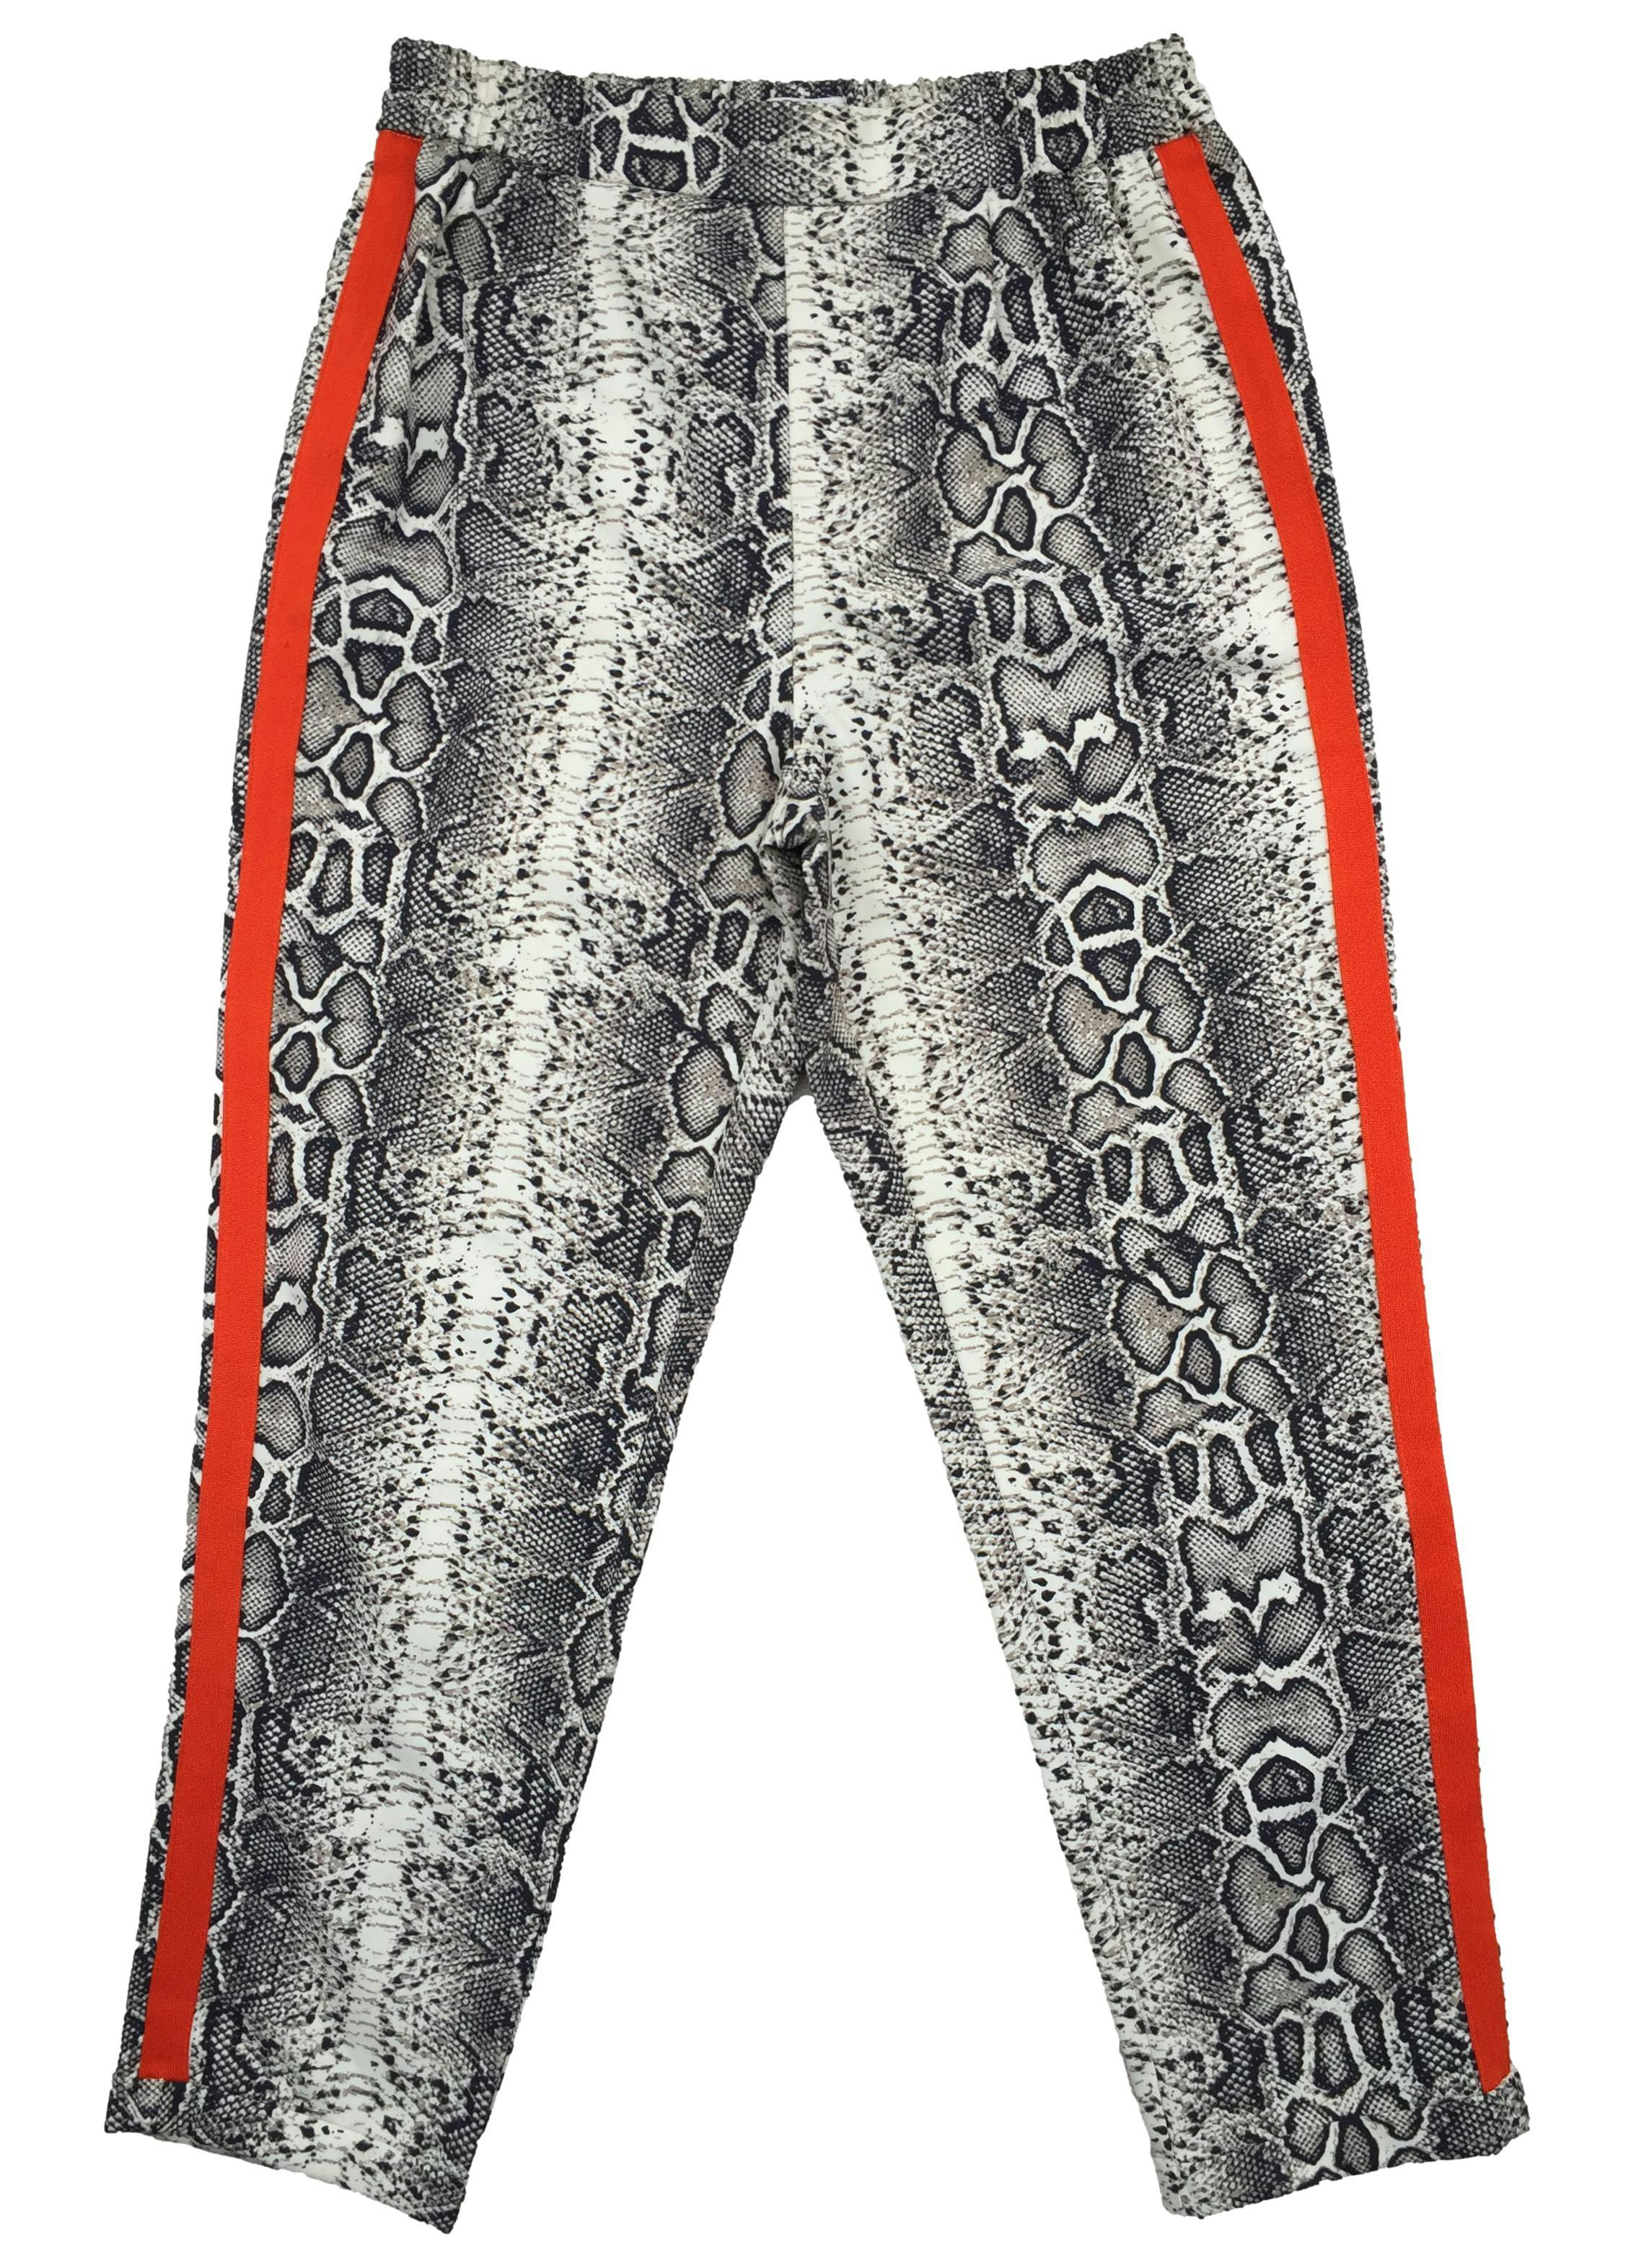 Pantalón Sybilla tipo jogger, estampado piel de serpiente y franjas naranjas en los laterales, pretina en la cintura. Cintura: 70cm (sin estirar), Tiro: 28cm, Largo: 90cm